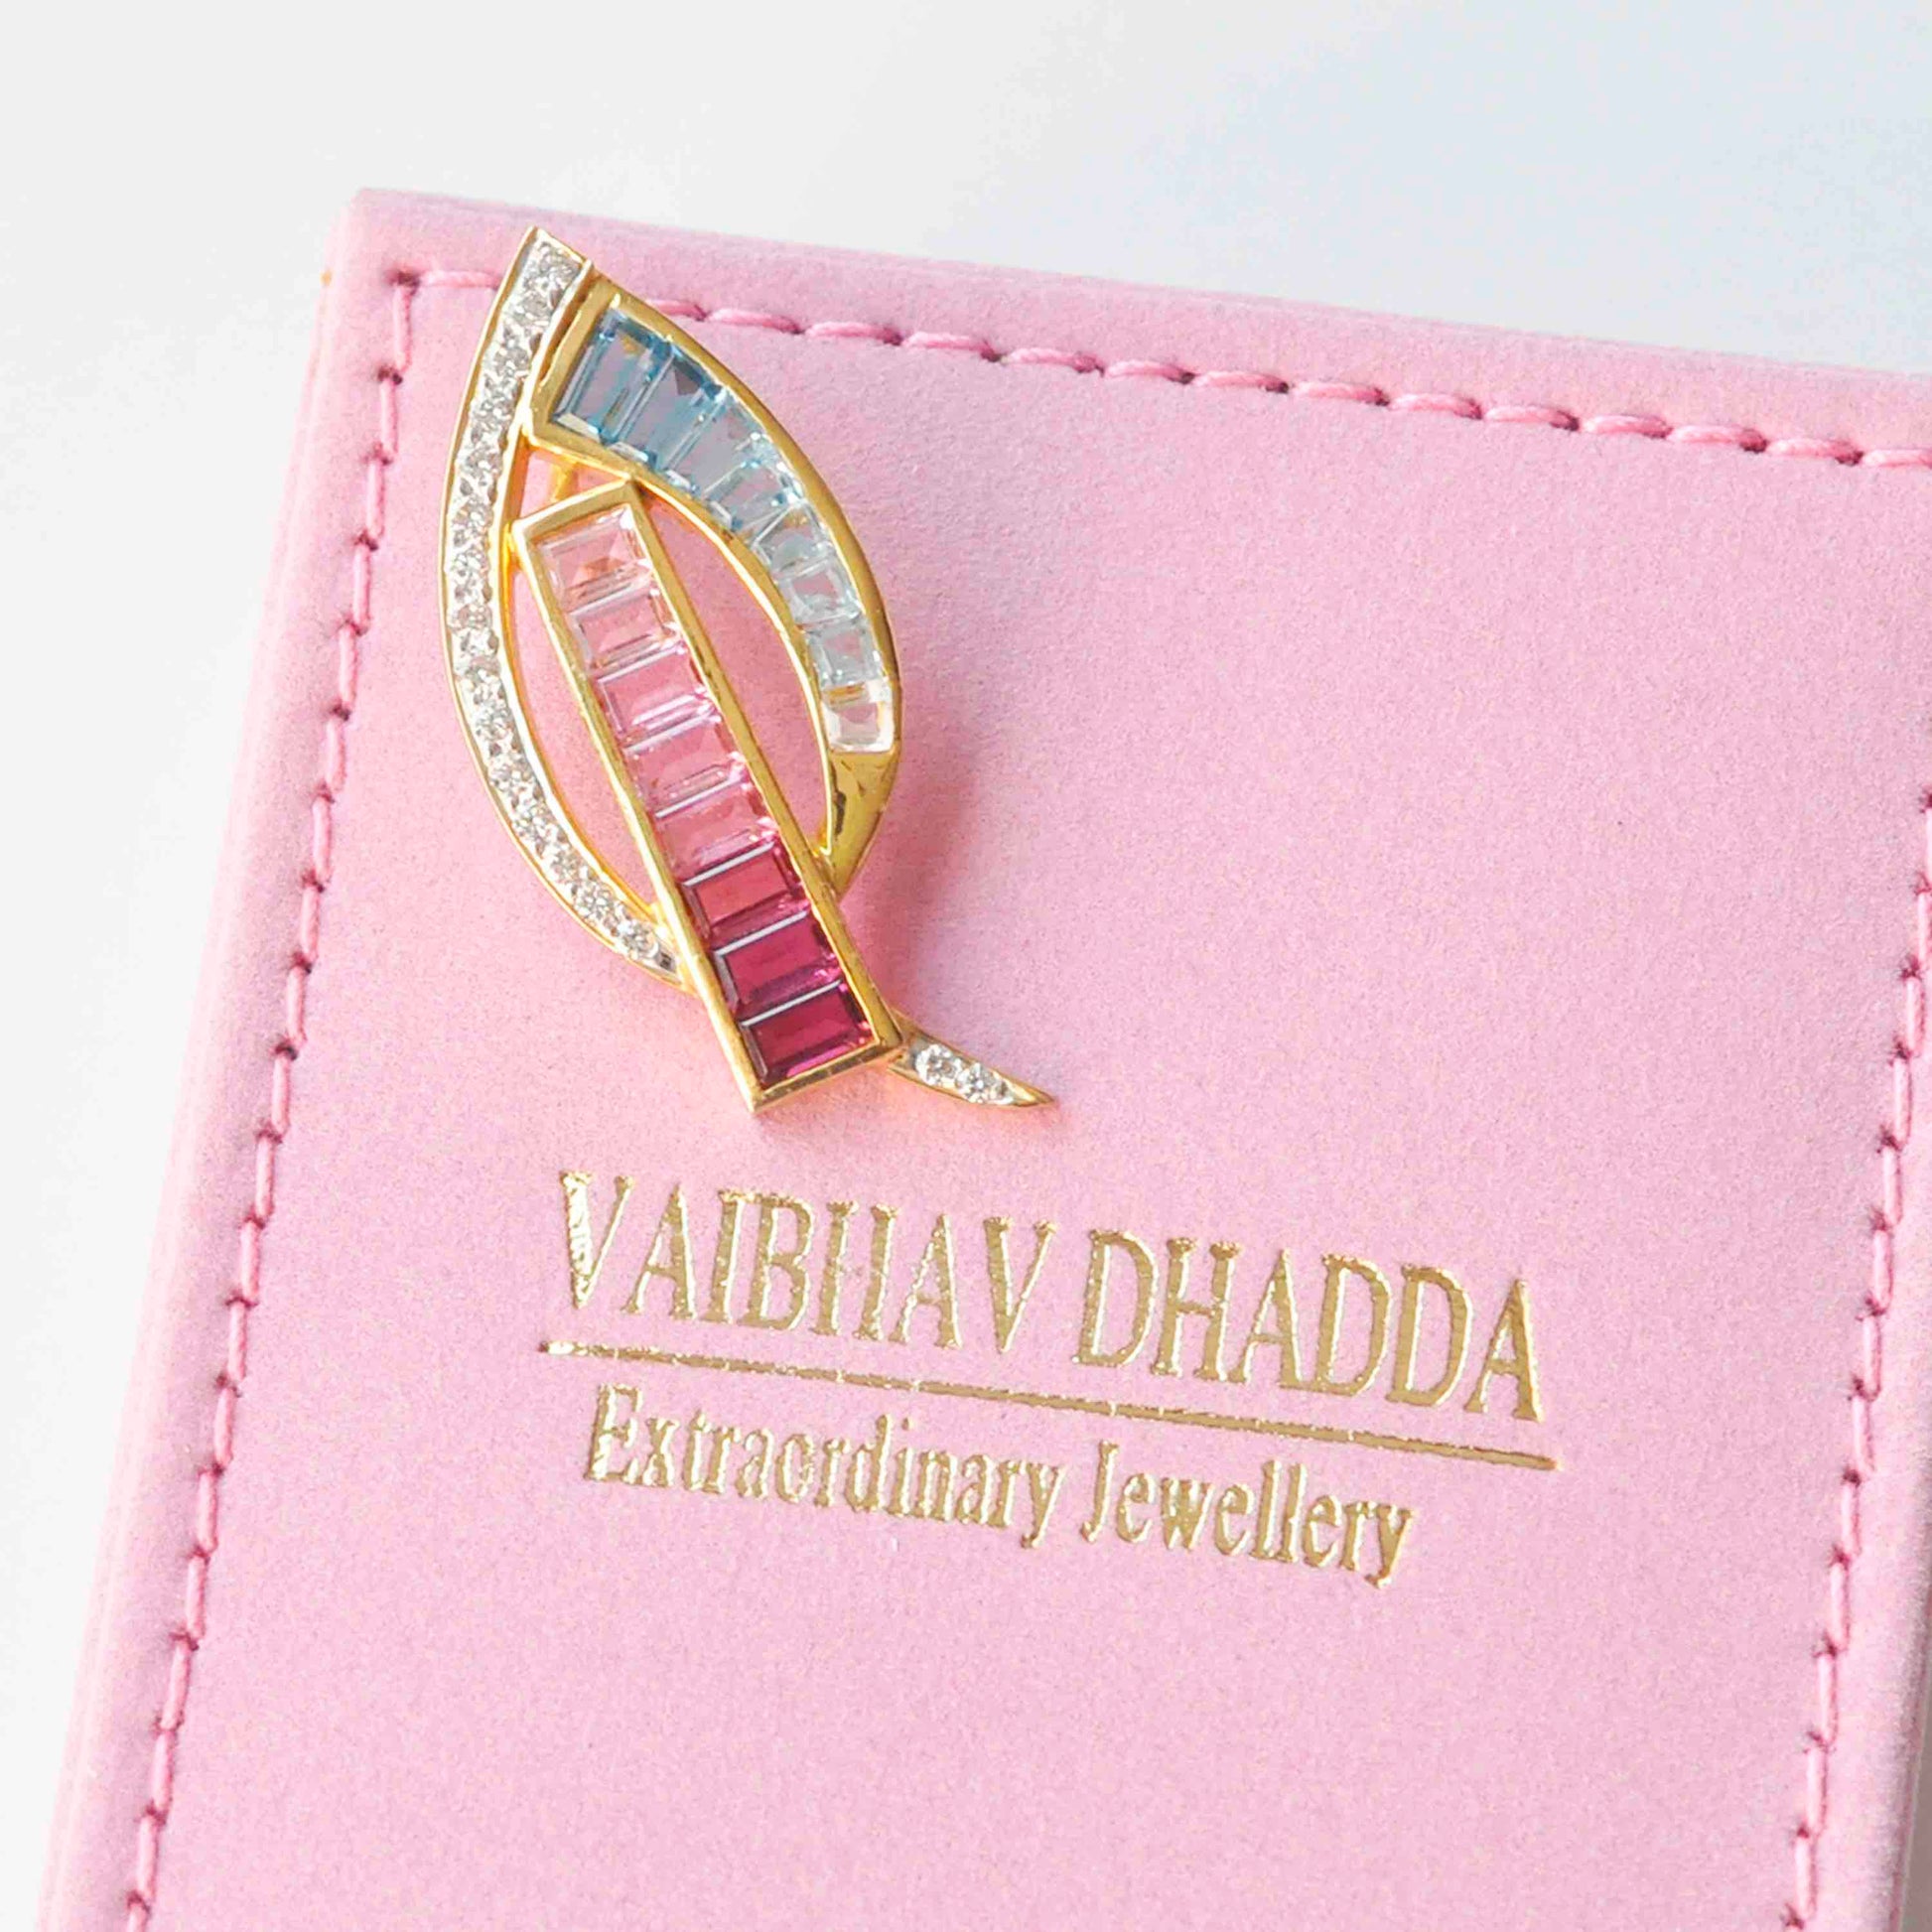 18k Gold Tapered Baguette Pink Tourmaline Aquamarine Diamond Pendant - Vaibhav Dhadda Jewelry